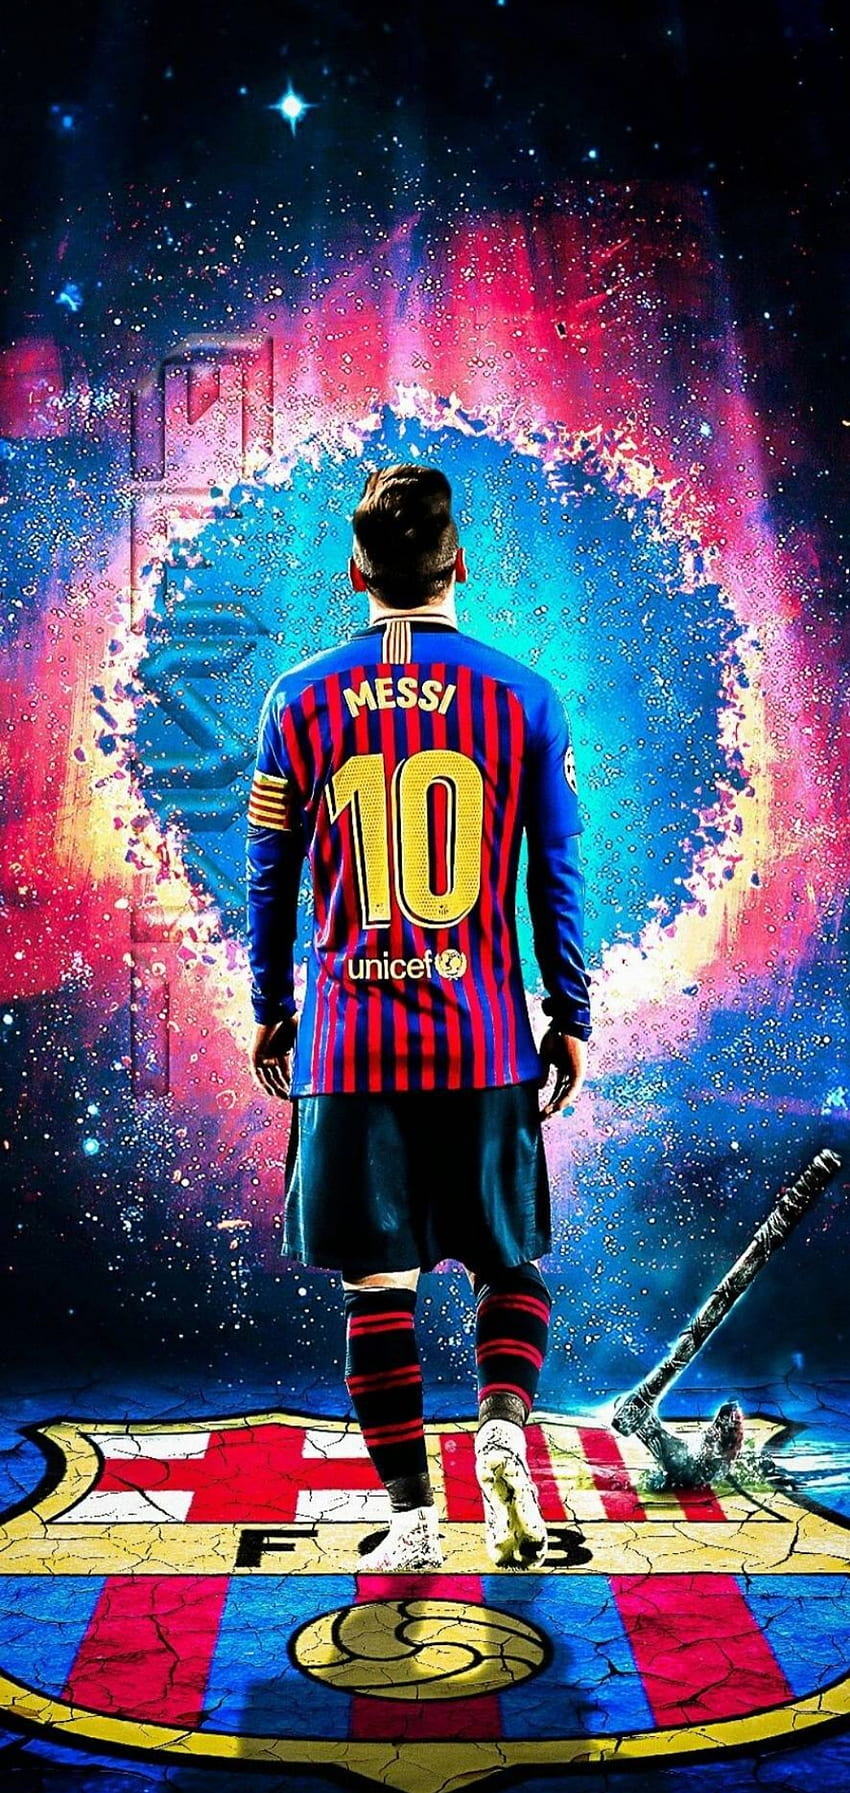 Nếu bạn là fan của bóng đá, hãy đừng bỏ lỡ bức hình nền với tên của siêu sao Lionel Messi. Bức ảnh phong cách với tạp chí Time sẽ khiến cho màn hình của bạn trở nên sống động hơn bao giờ hết.